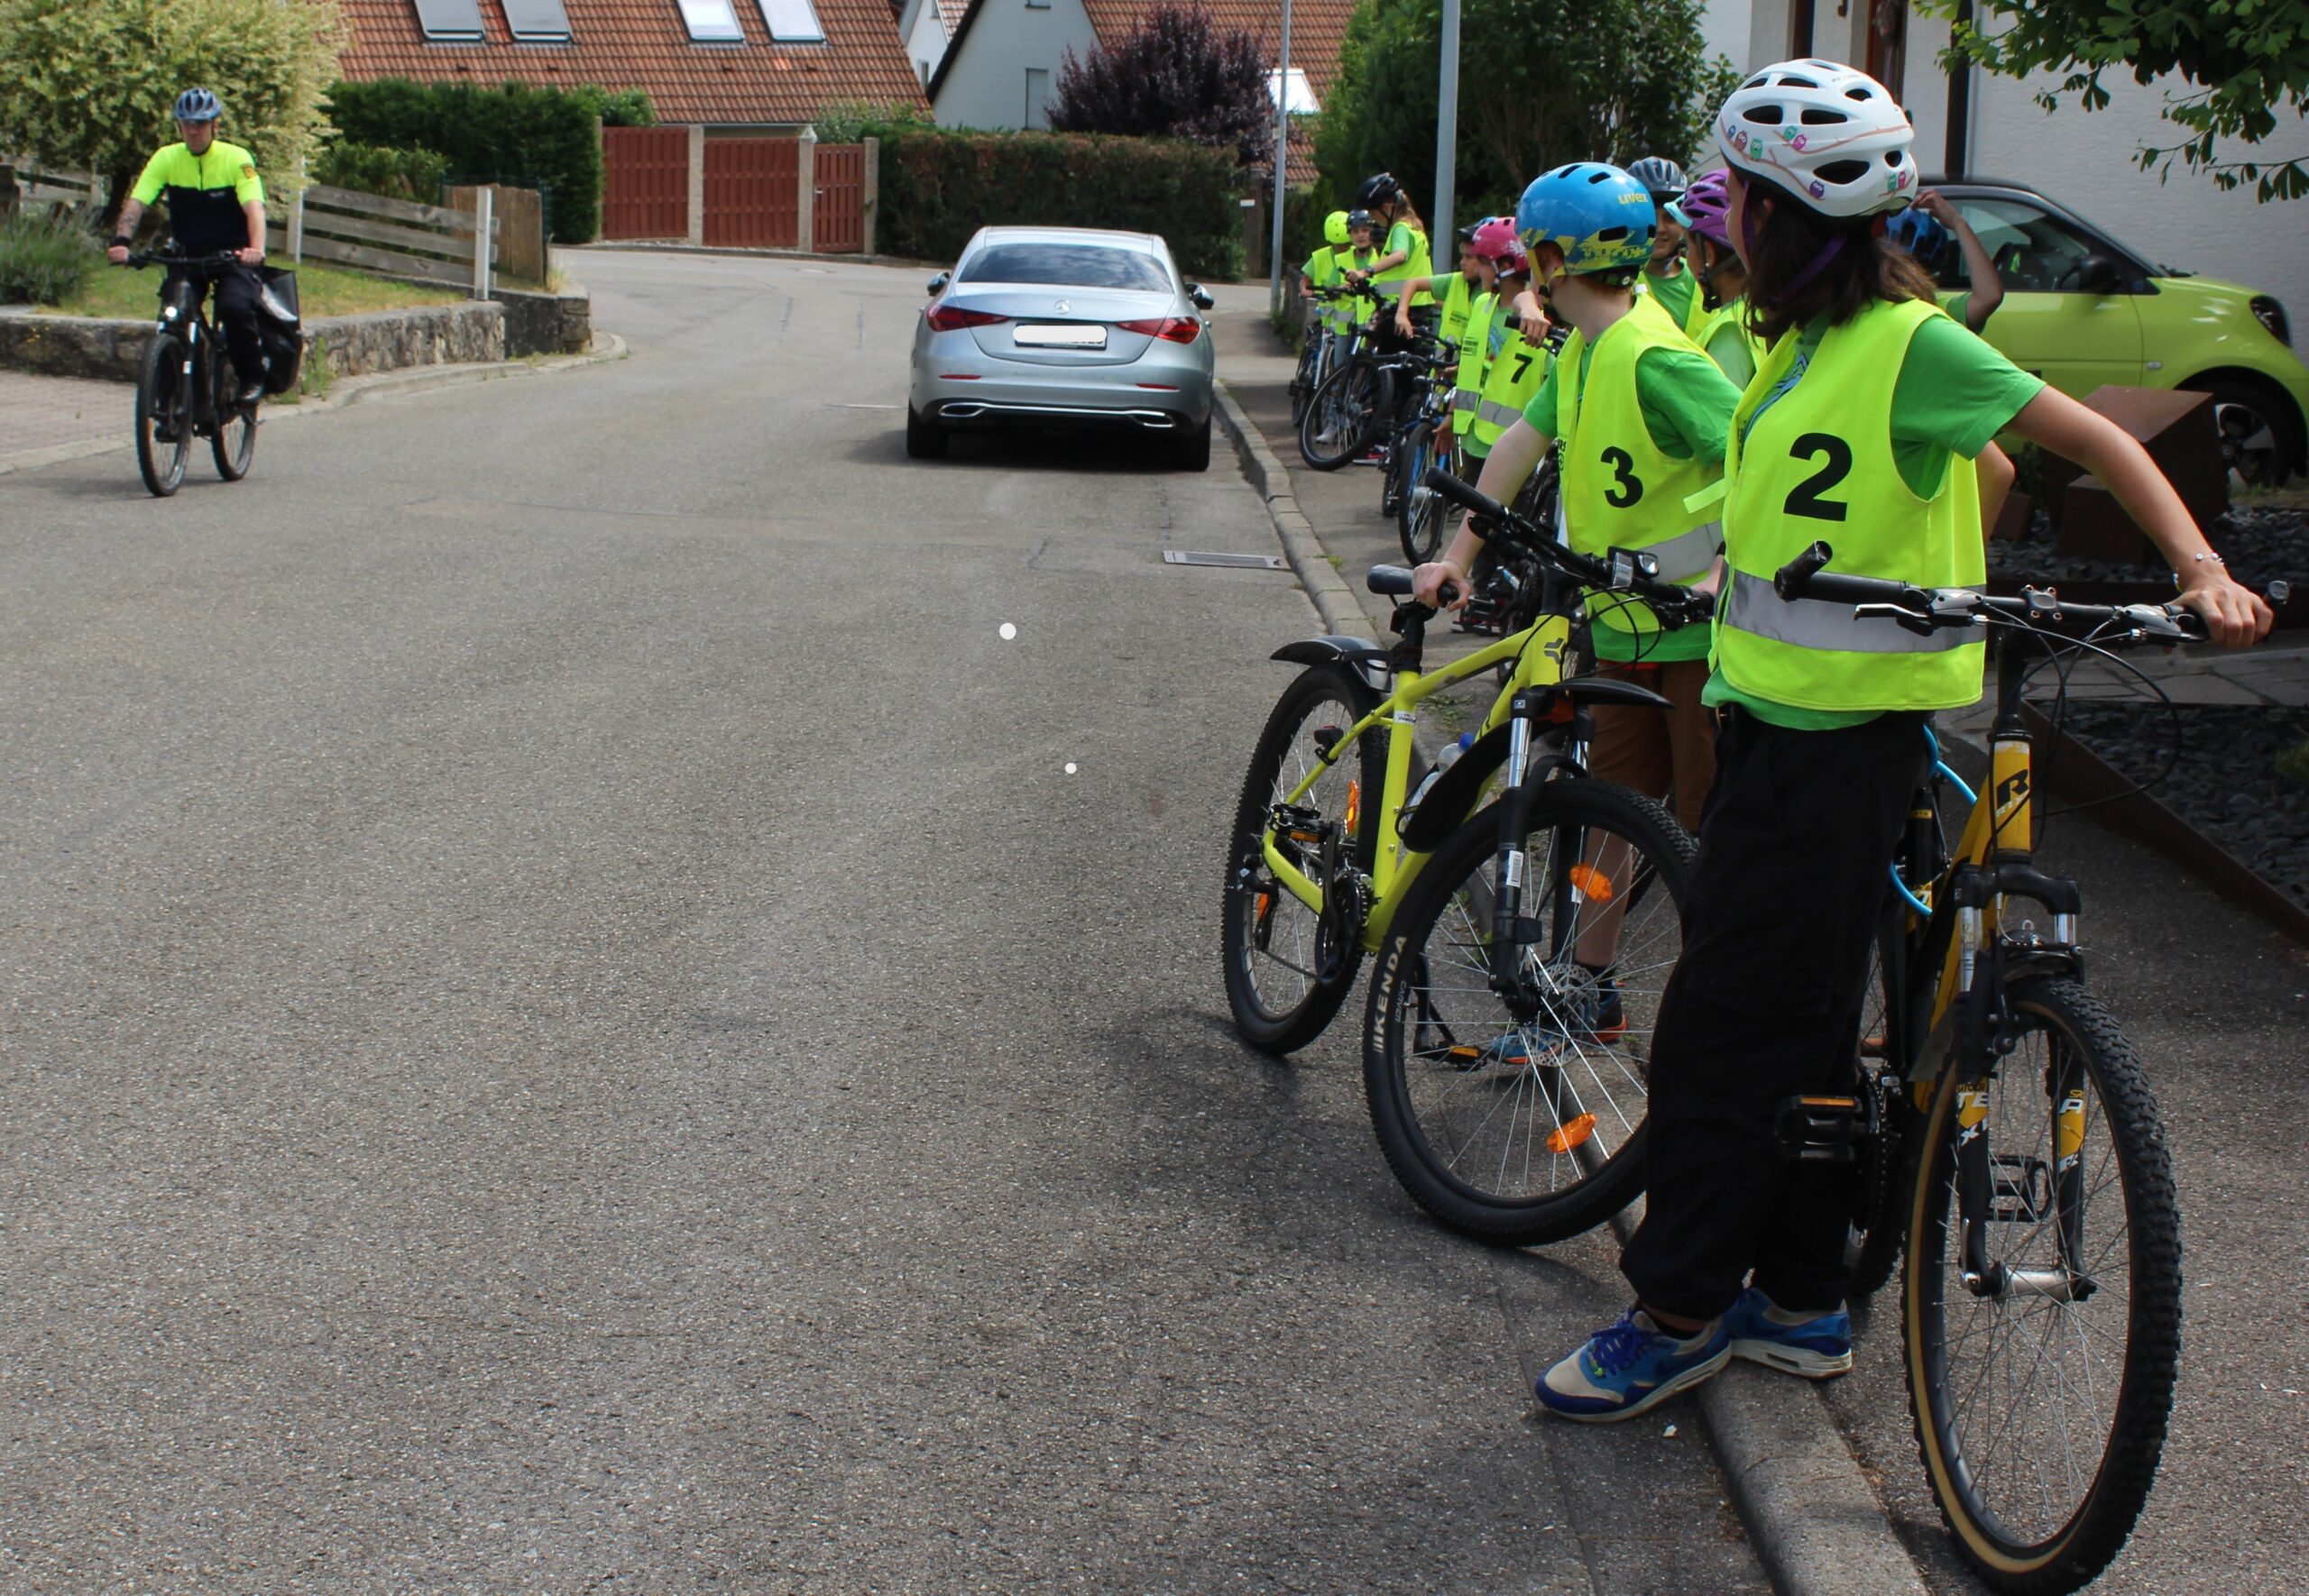 An einer Straße steht eine Klasse mit ihren Fahrrädern und Leuchtwesten und schaut auf einen Polizisten auf dem Fahrrad.